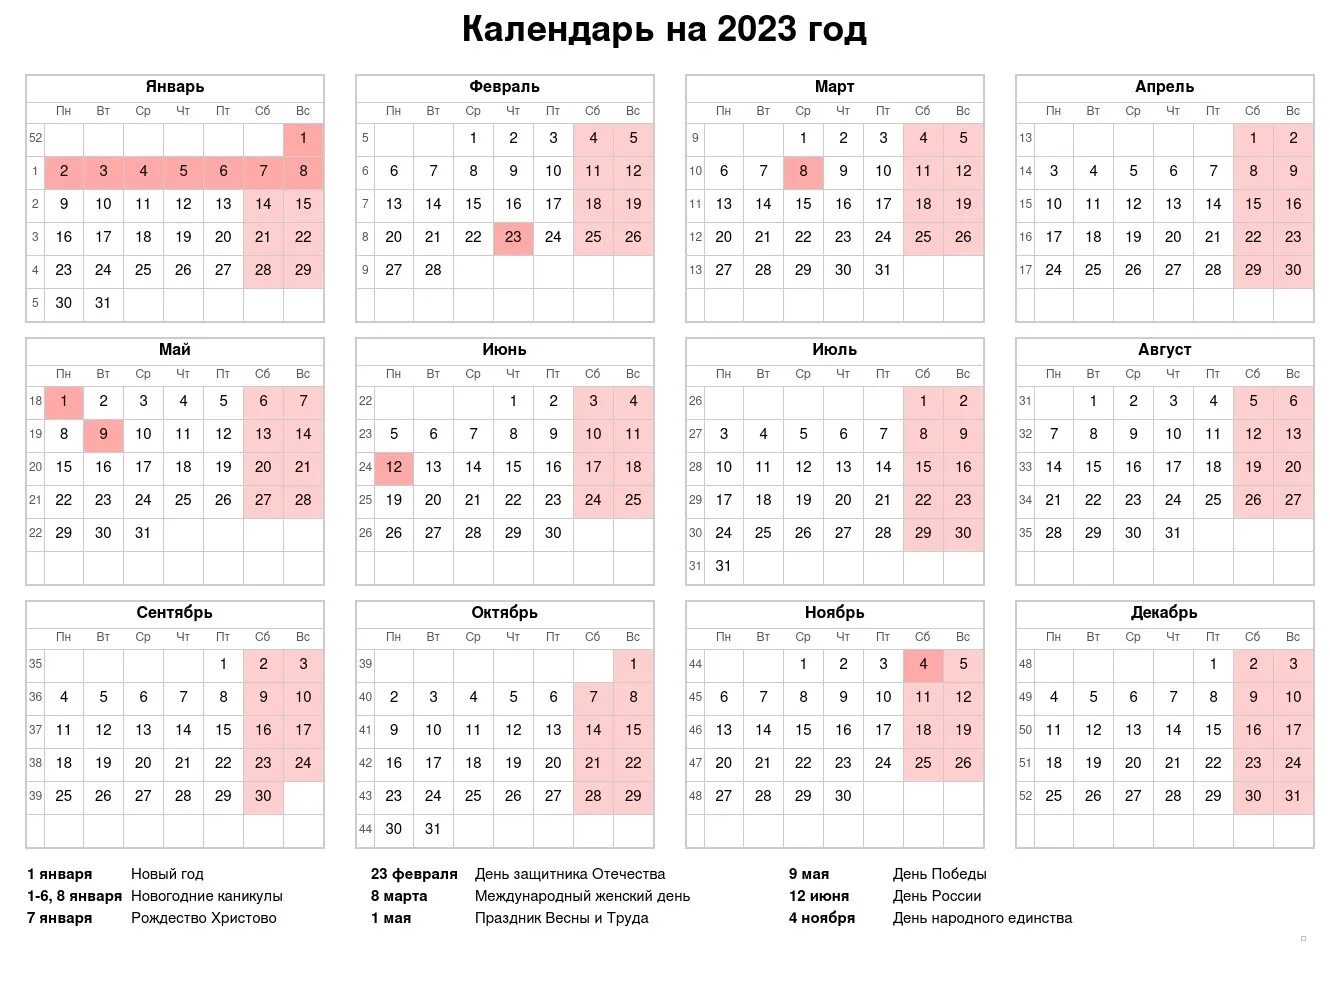 Праздники 2022 официальные выходные календарь. Календарь выходных и праздничных дней в 2022 году. Праздники нерабочие дни 2022 года в России. Праздничные и выходные дни в 2022 году в России Министерство труда. Производственный календарь 2022 Россия год с праздниками.